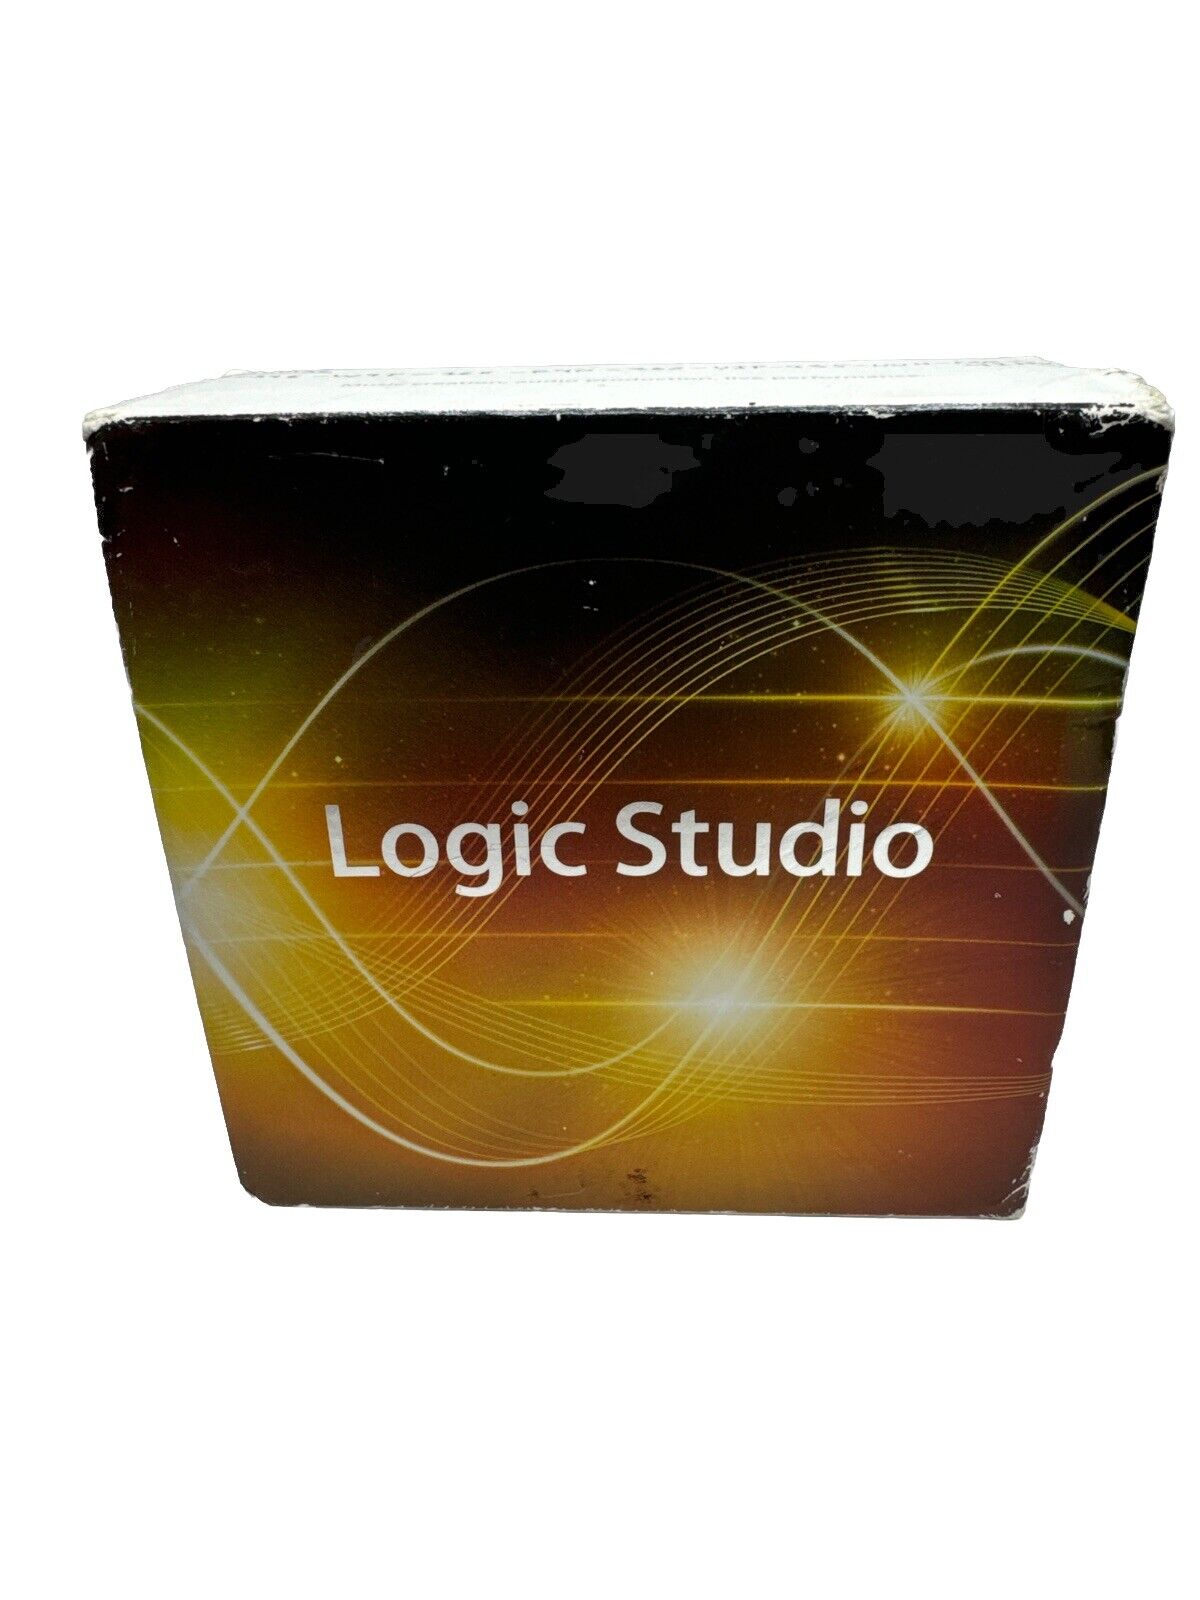 Genuine Apple Logic Studio 2.0 RETAIL VERSION Complete in original Box